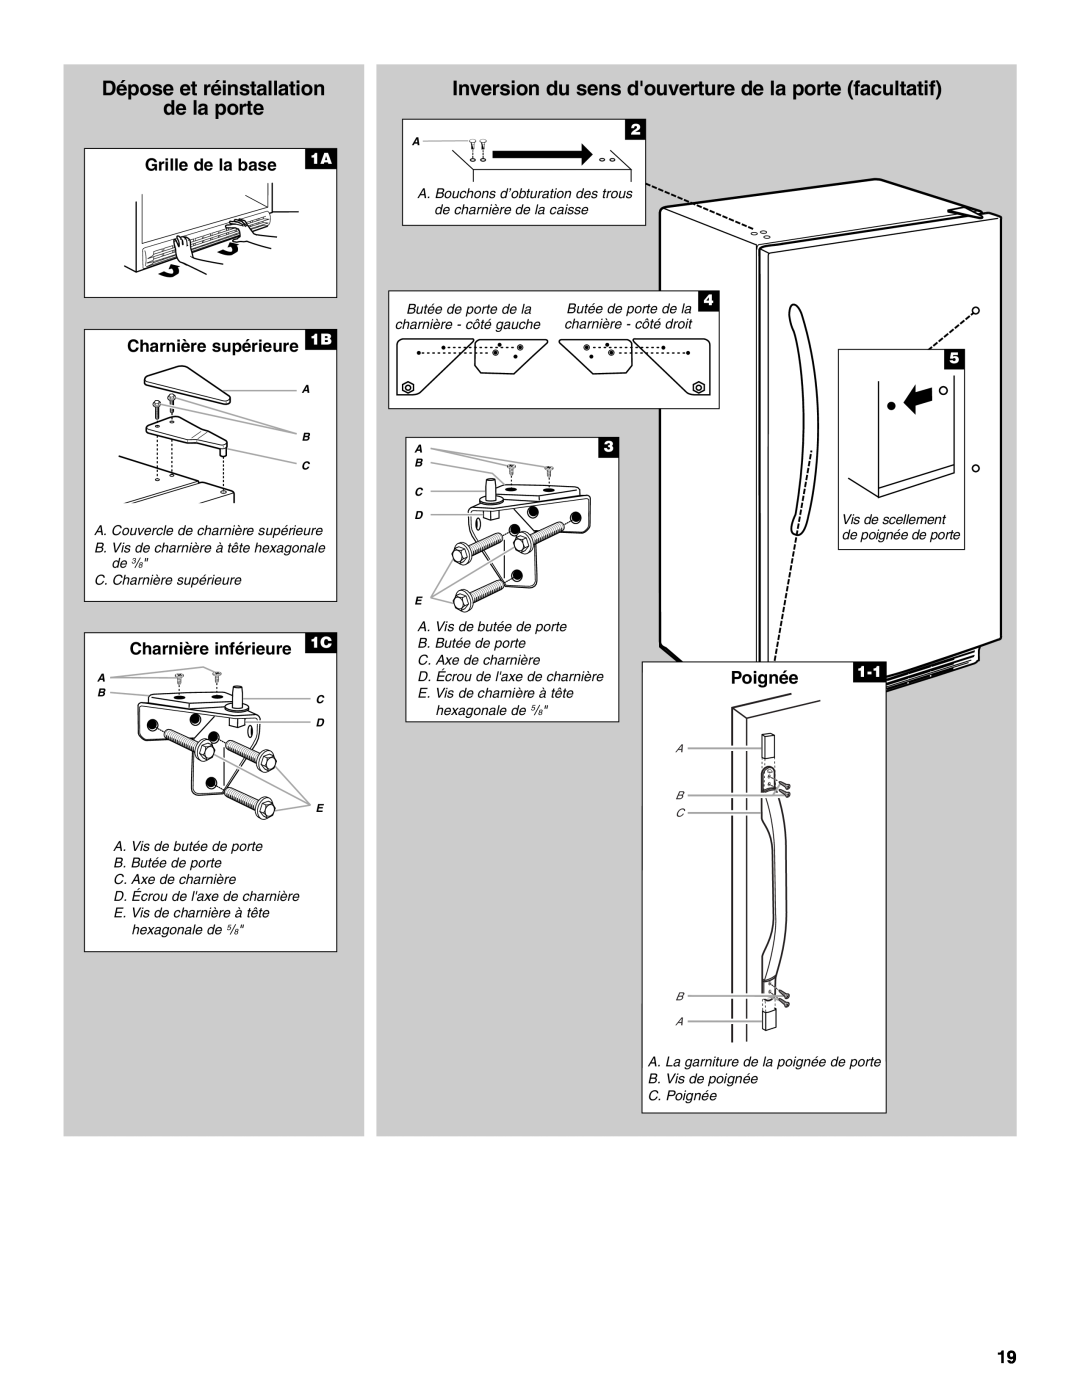 Danby DUFM454WDB manual Dépose et réinstallation de la porte, Inversion du sens douverture de la porte facultatif, Poignée 